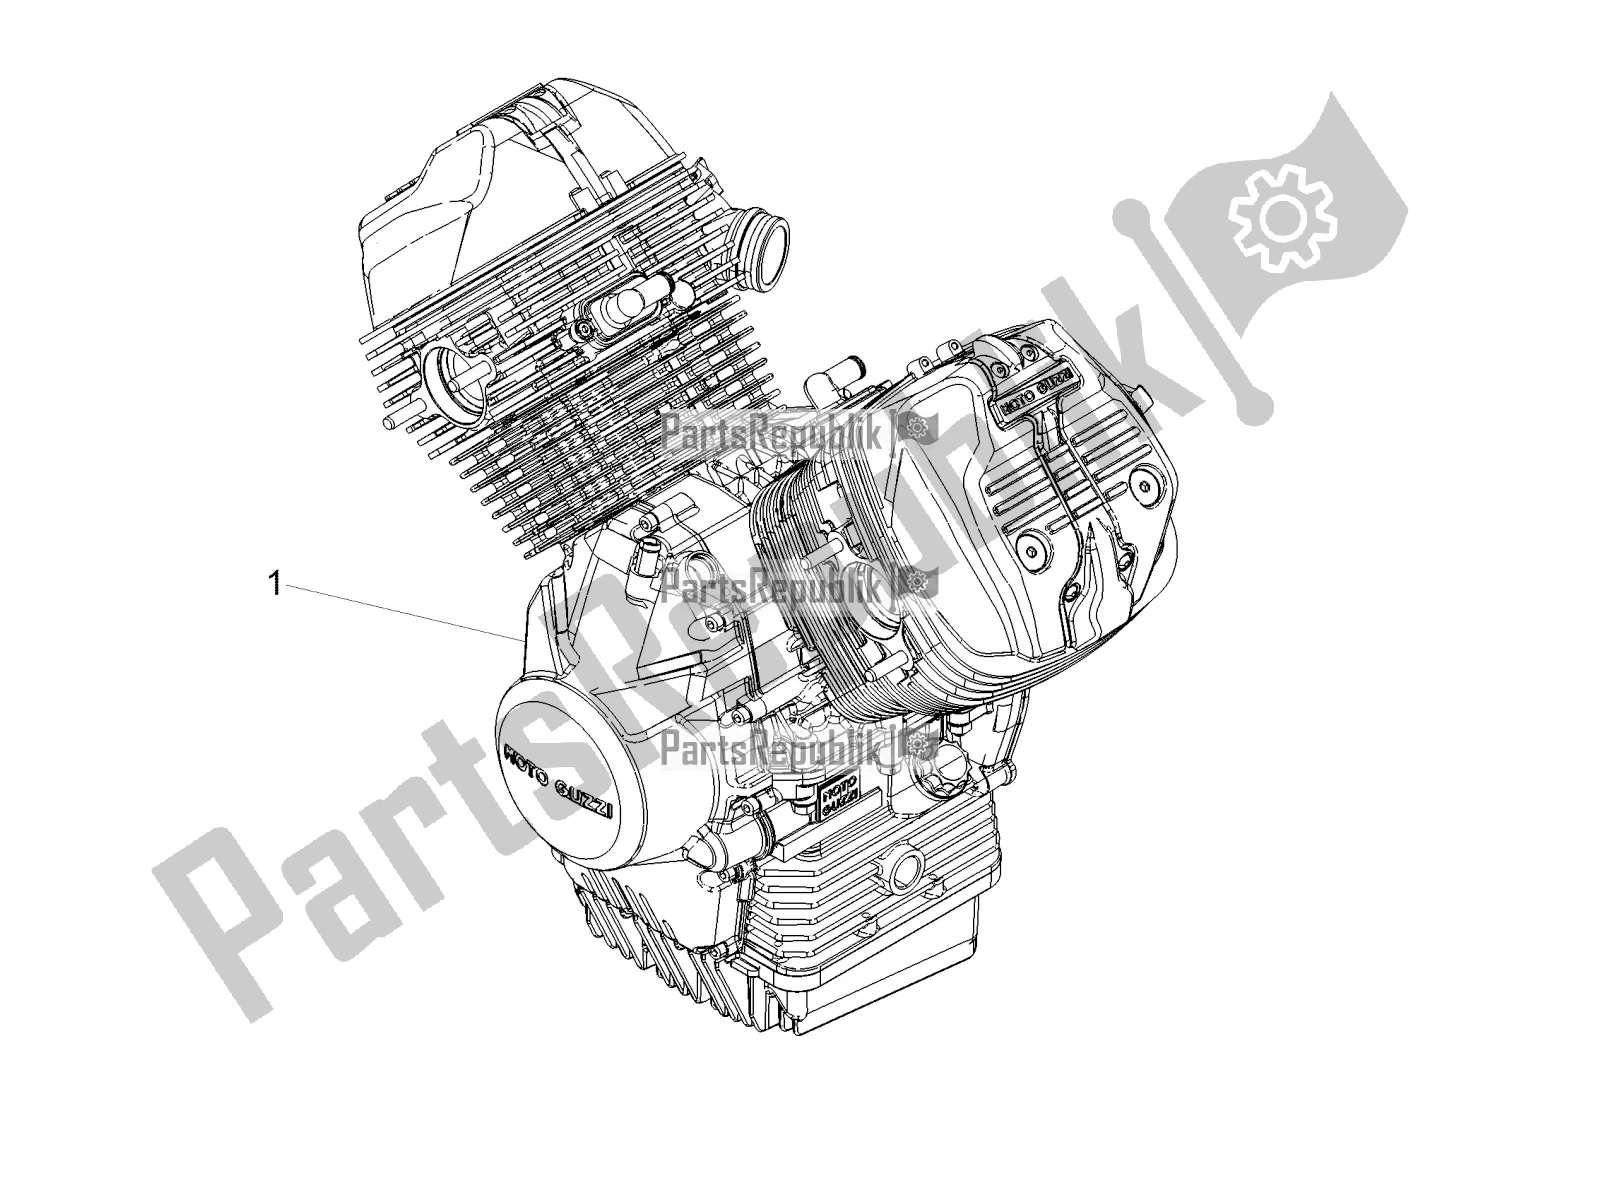 Toutes les pièces pour le Levier Partiel Pour Compléter Le Moteur du Moto-Guzzi V7 III Racer 10 TH Anniversary Apac 750 2020